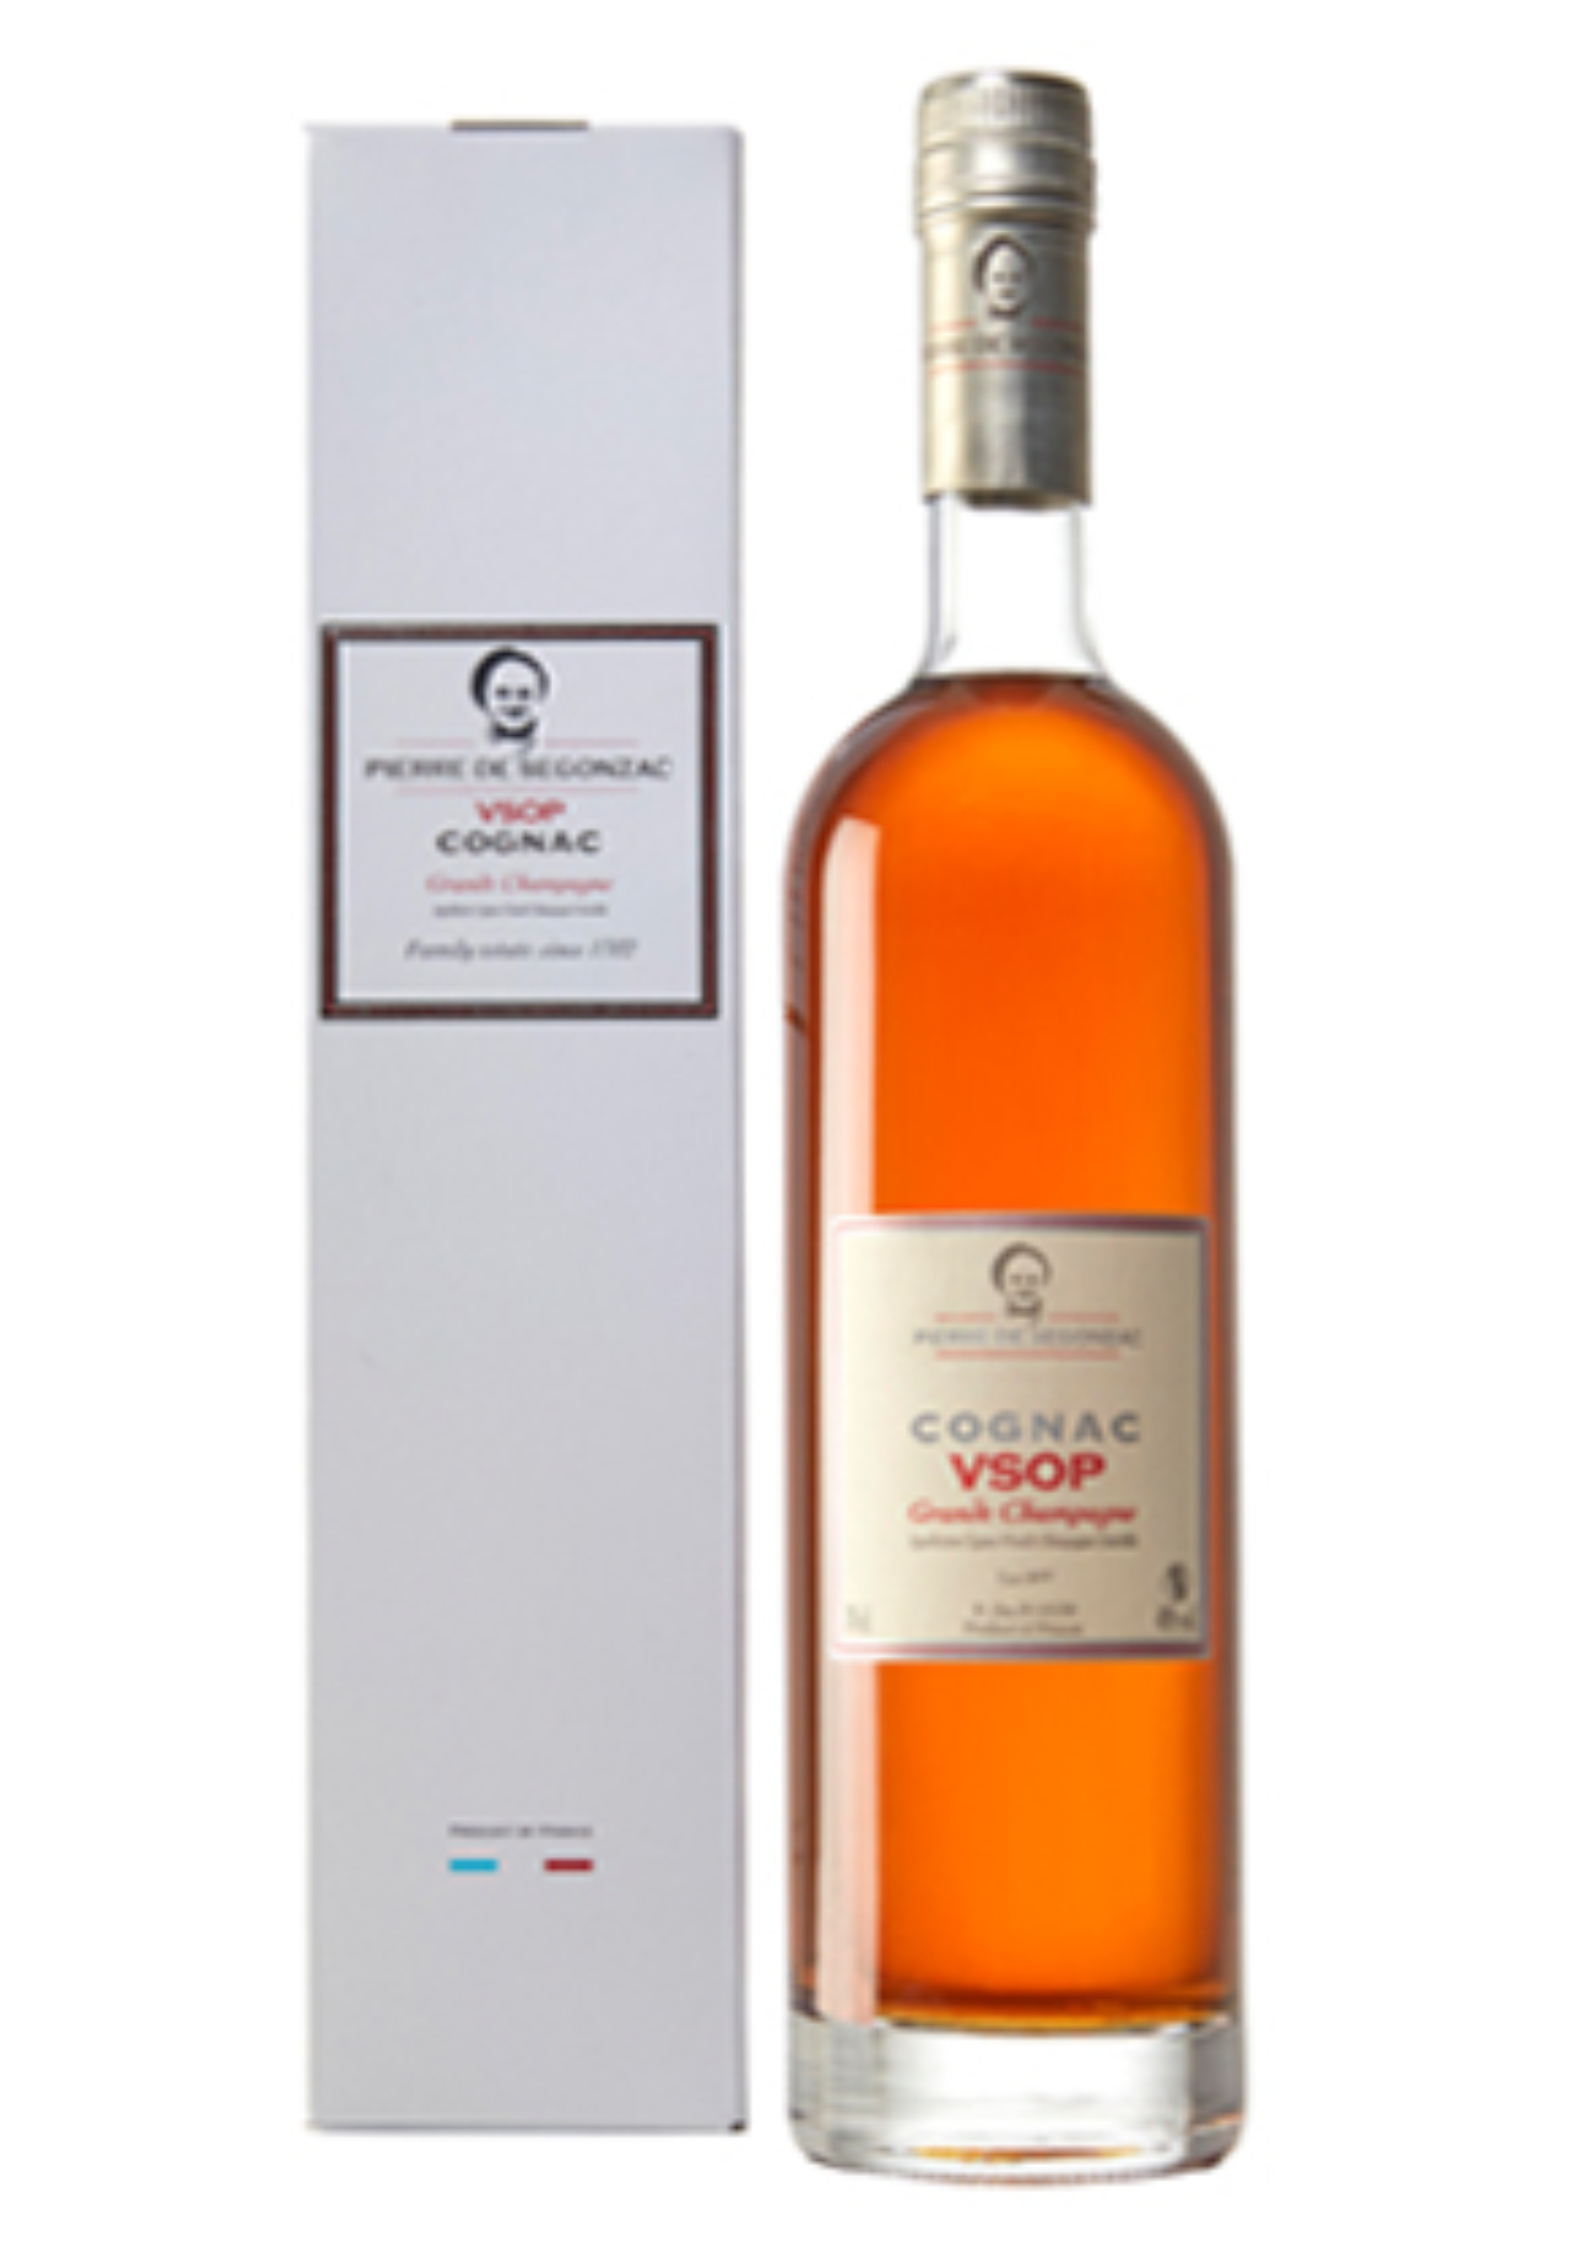 Bottle of Pierre Segonzac VSOP Cognac, 40% - The Spirits Room